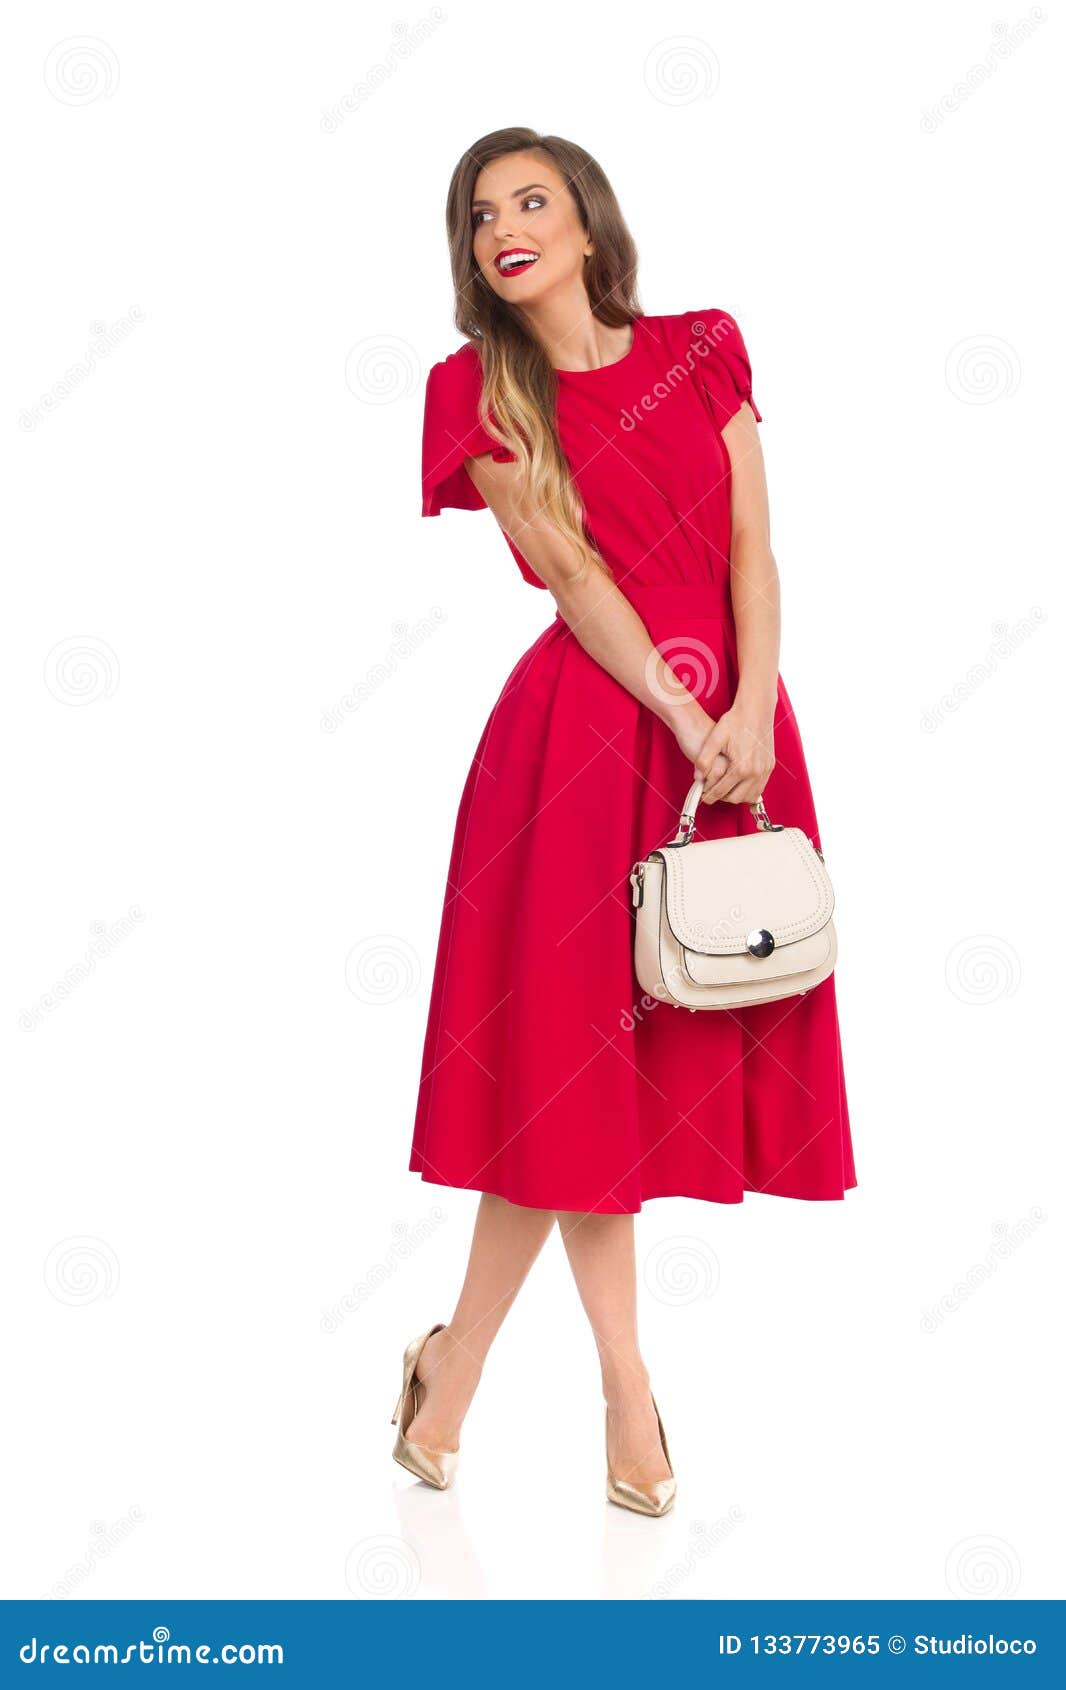 La Mujer De Moda Feliz En Vestido Rojo, Tacones Altos Del Oro Y Monedero Beige Mirando Lejos Imagen de archivo - Imagen de feminidad, manera: 133773965